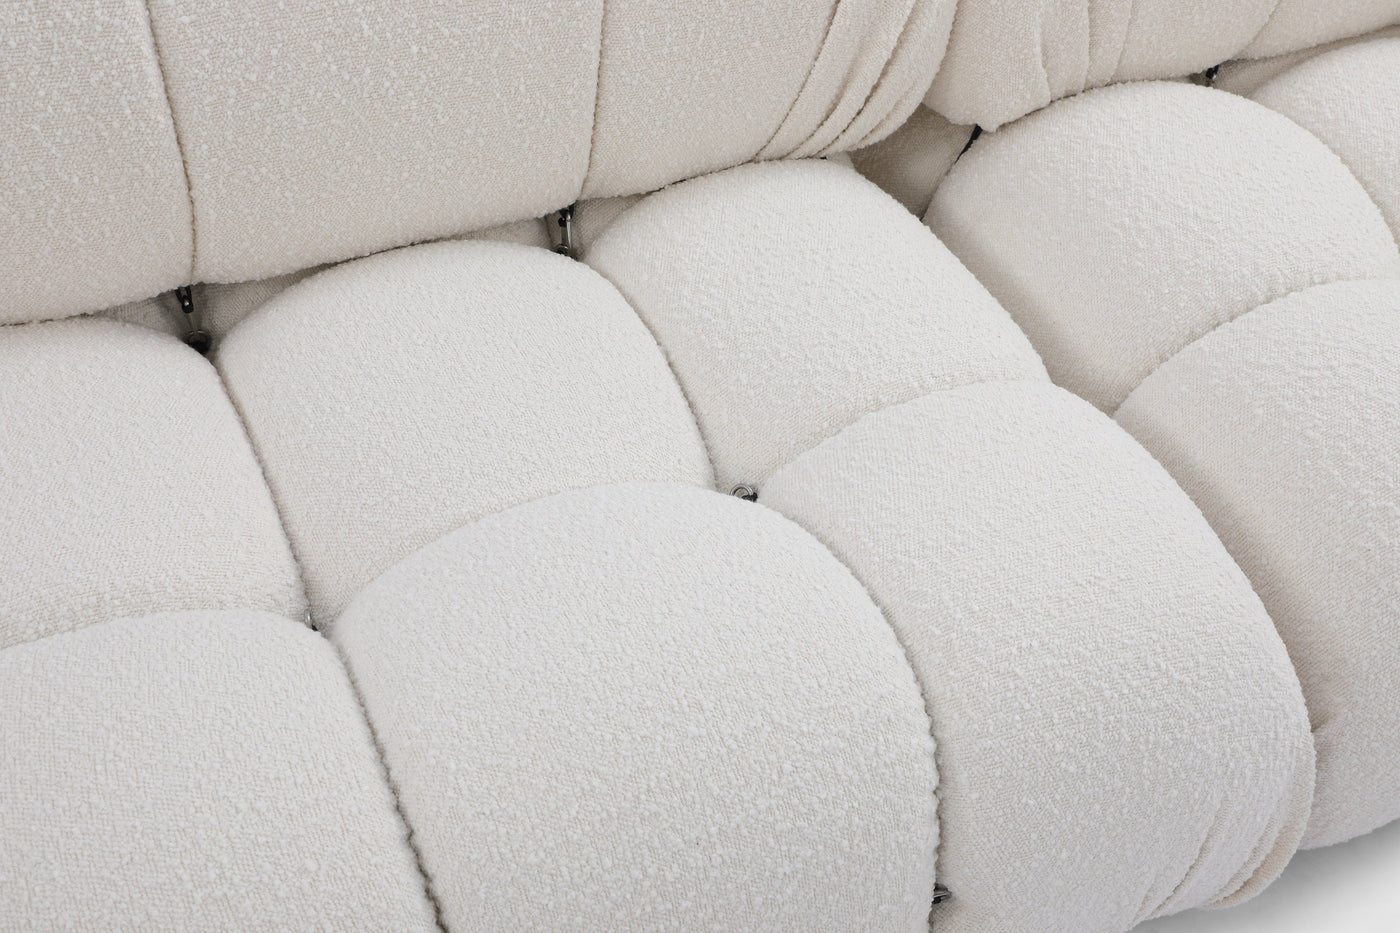 Camaleonda sofa in white Boucle - Retro Modern Designs